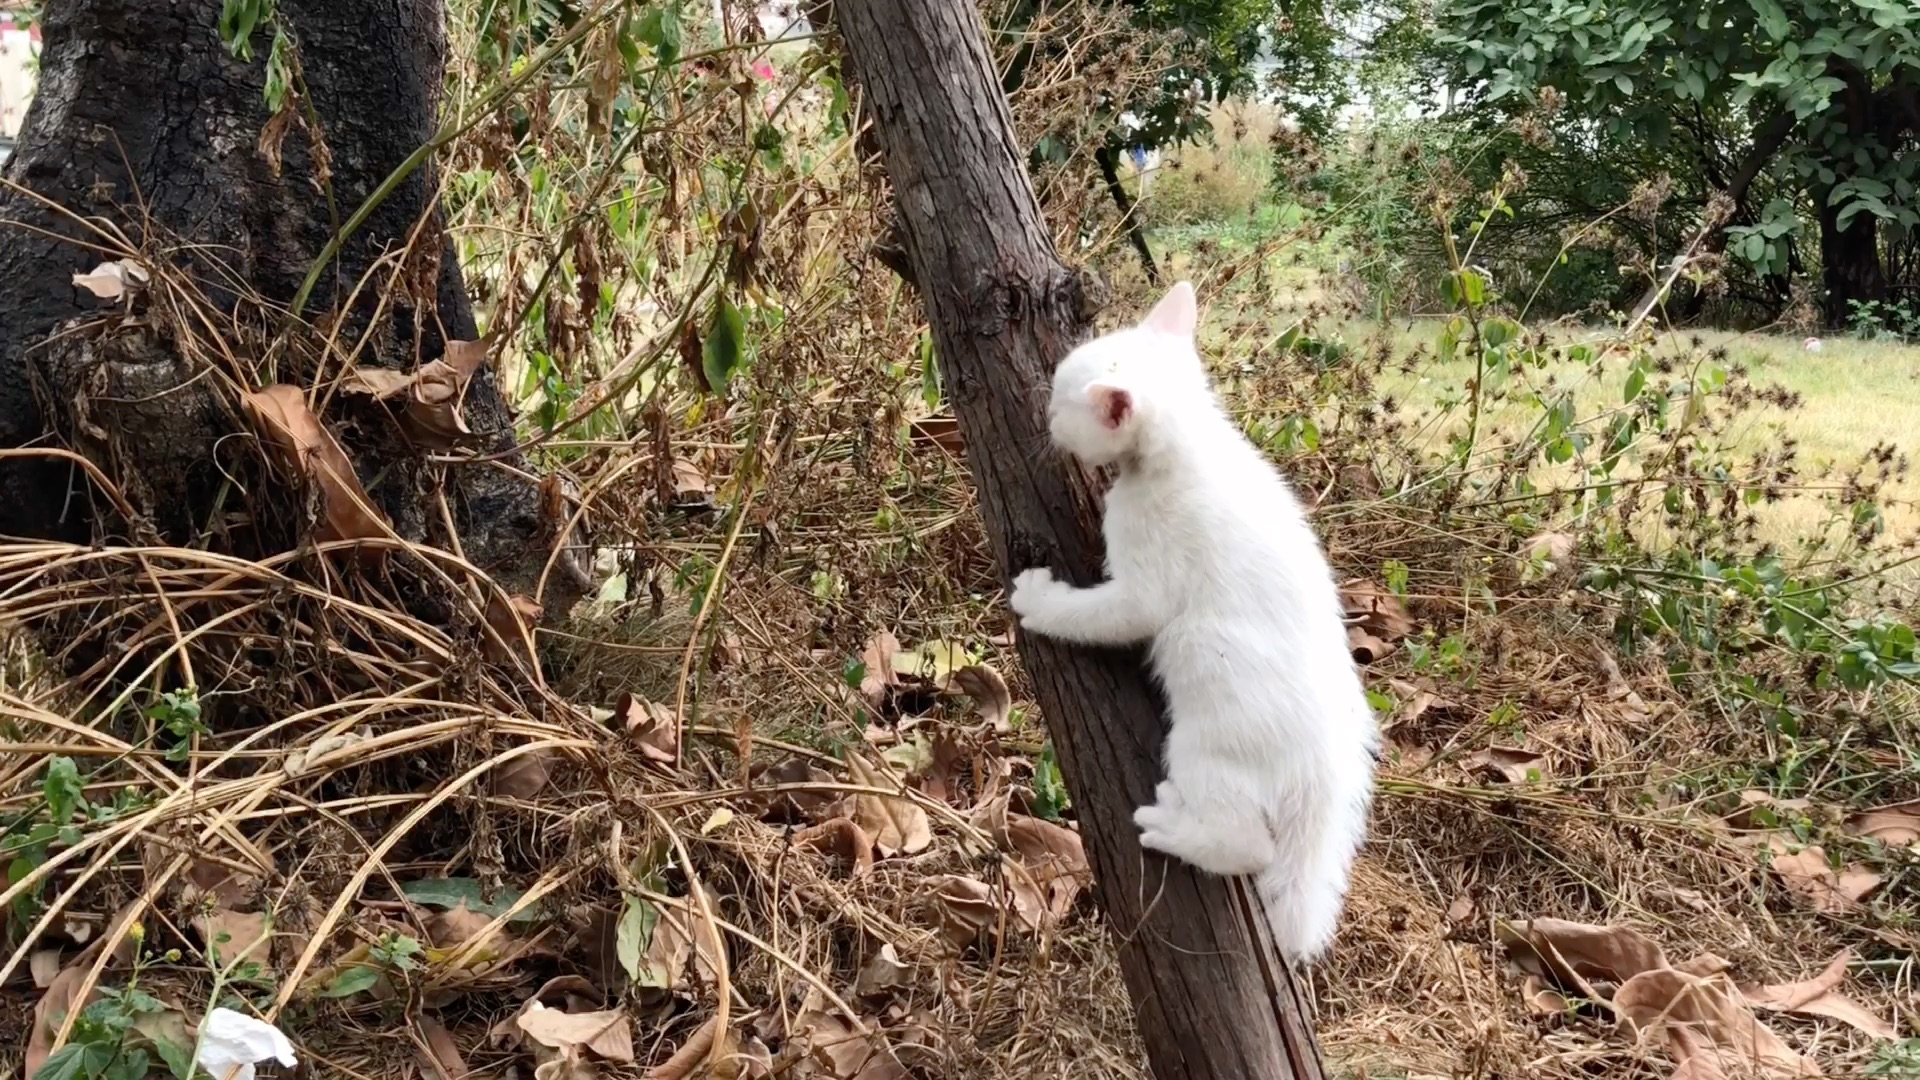 暹罗猫爬树捉松鼠。高清摄影大图-千库网